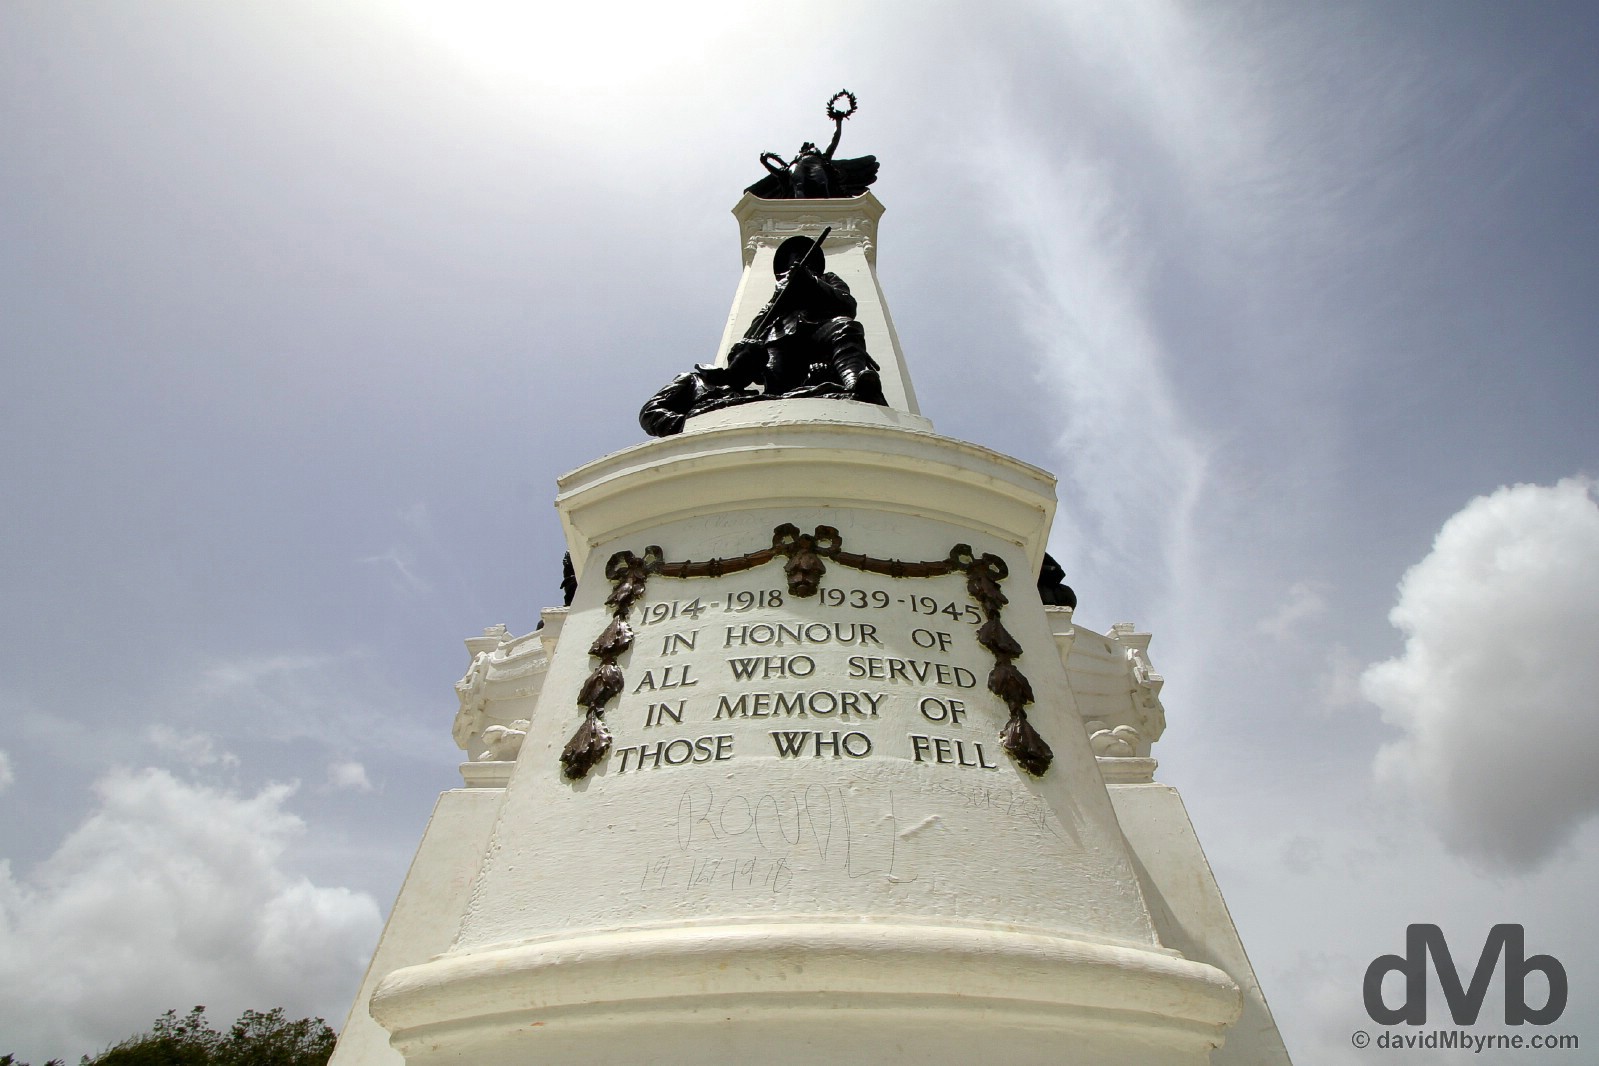 Memorial Park, Port of Spain, Trinidad & Tobago. June 17, 2015.